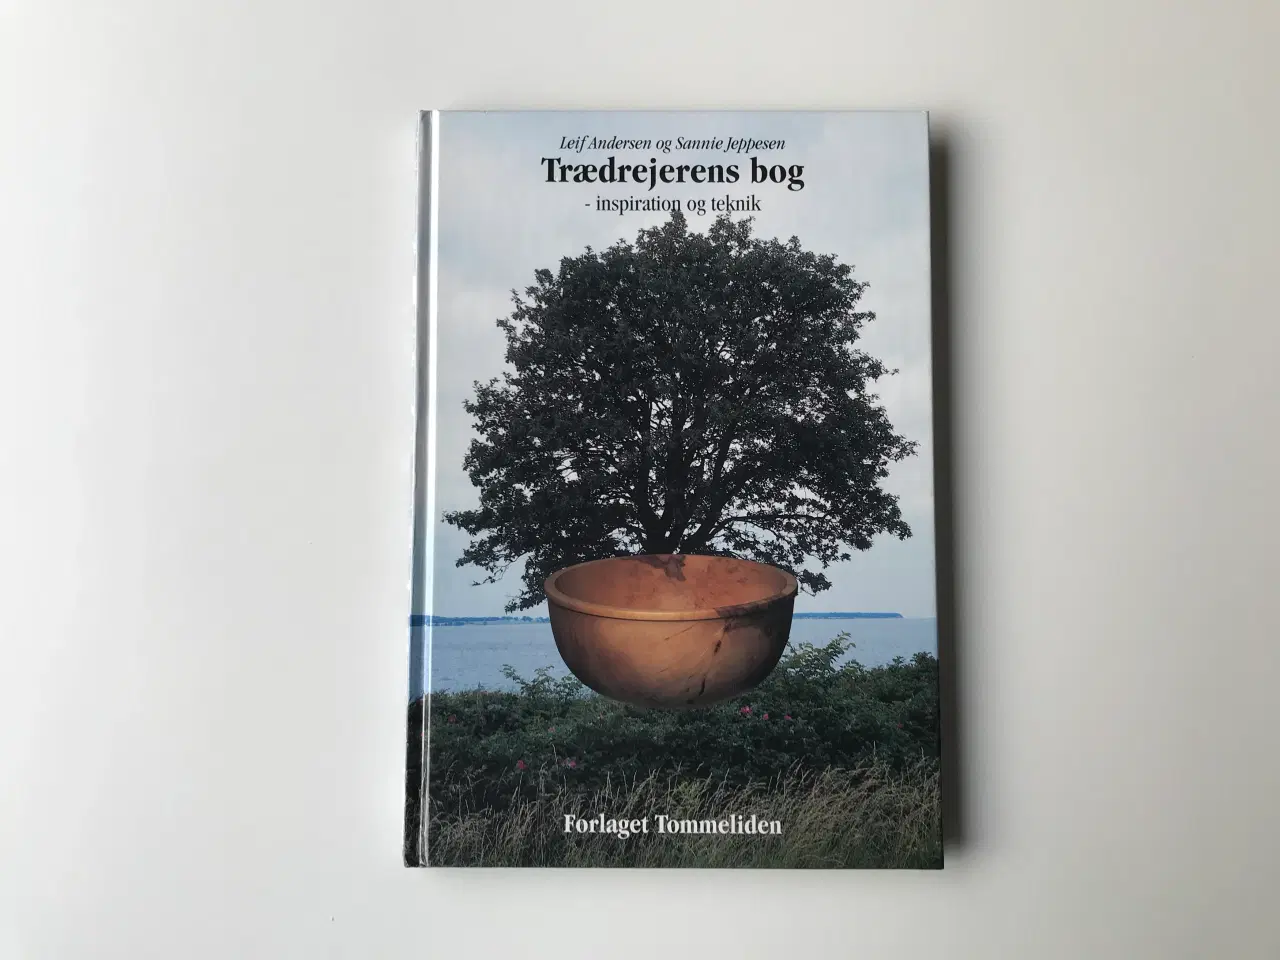 Billede 1 - Trædrejerens bog - inspiration og teknik